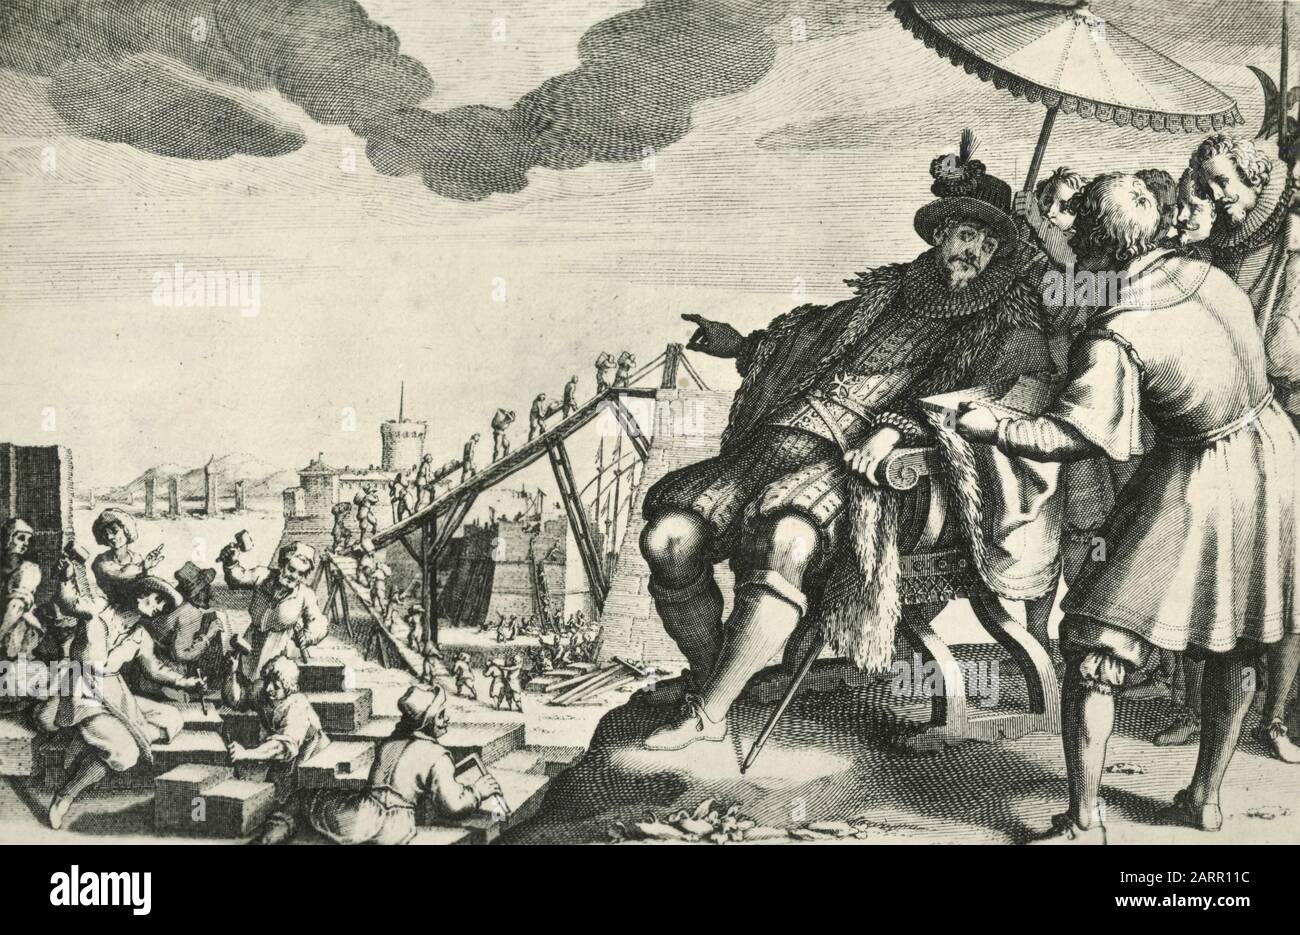 Der Großfürst Stärkt den Hafen von Livorno, das Leben von Ferdinando i de' Medici, die Gravur des französischen Künstlers Jacques Callot, den 1920er Jahren Stockfoto